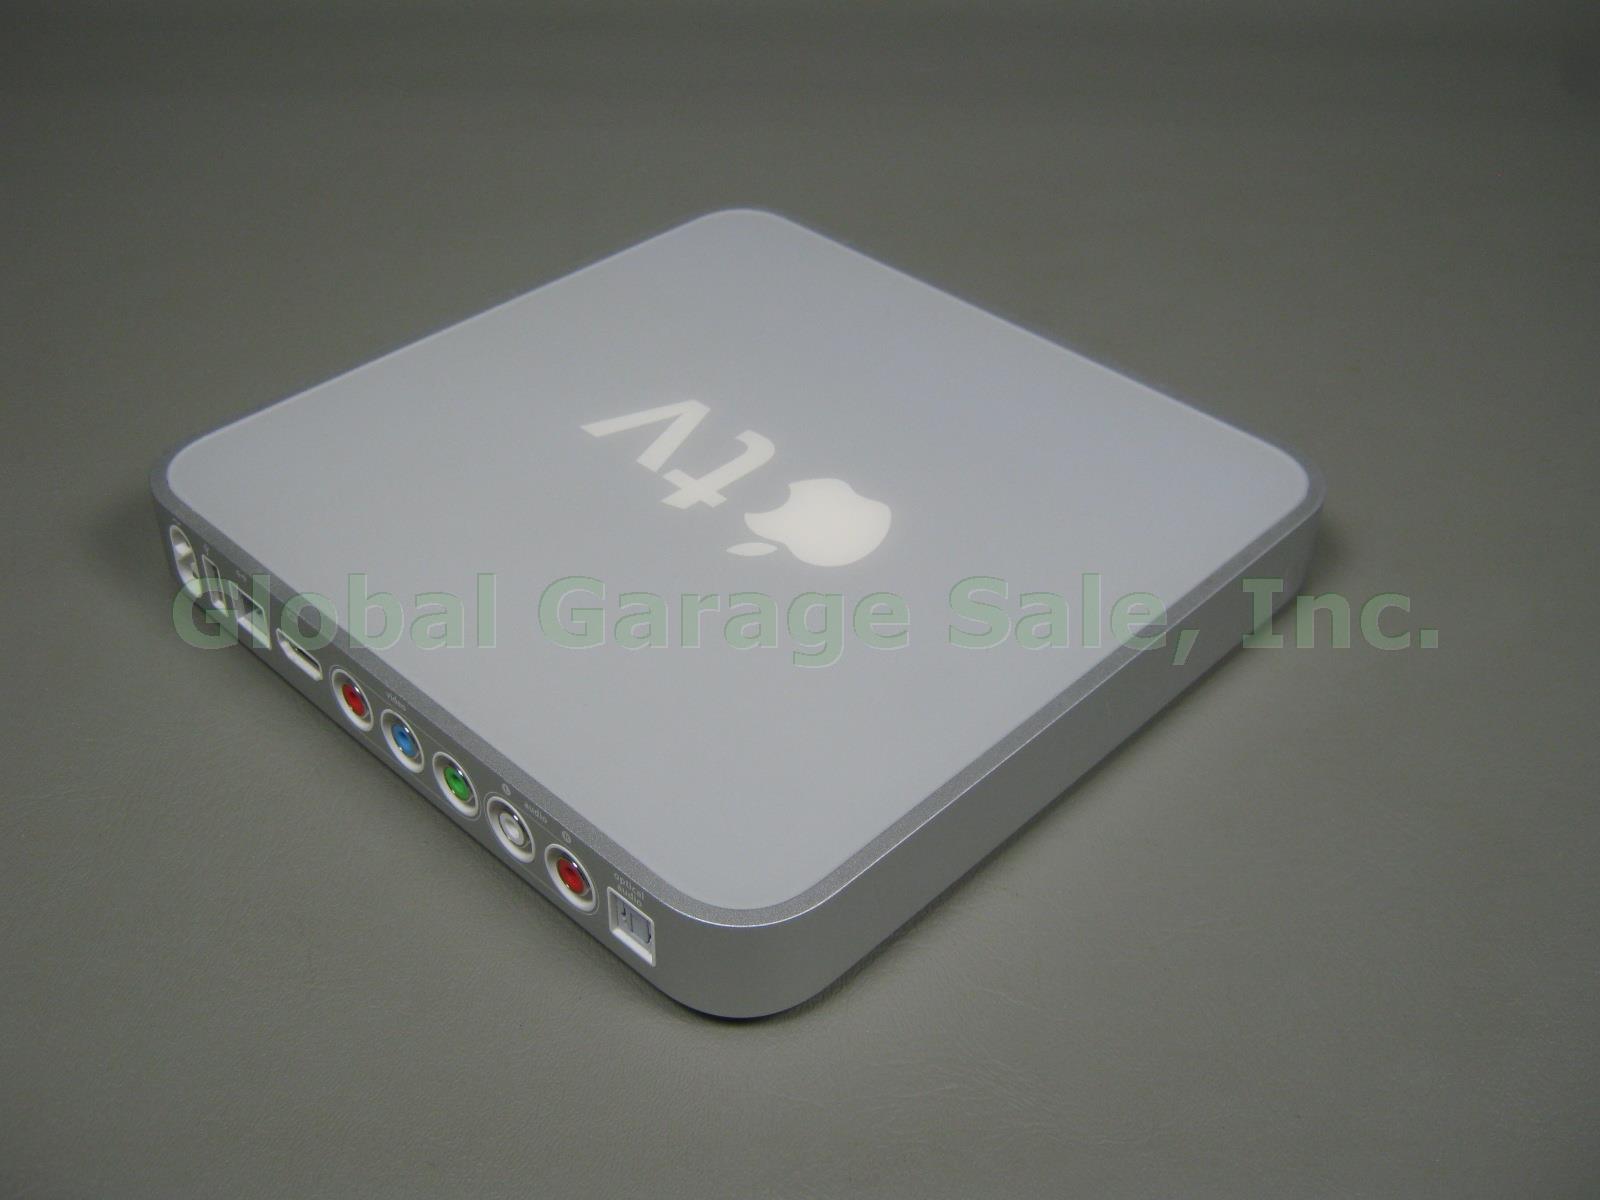 Apple TV A1218 MA711LL/A 40GB 1st Gen Digital Media Streamer Bundle W/ Remote NR 2